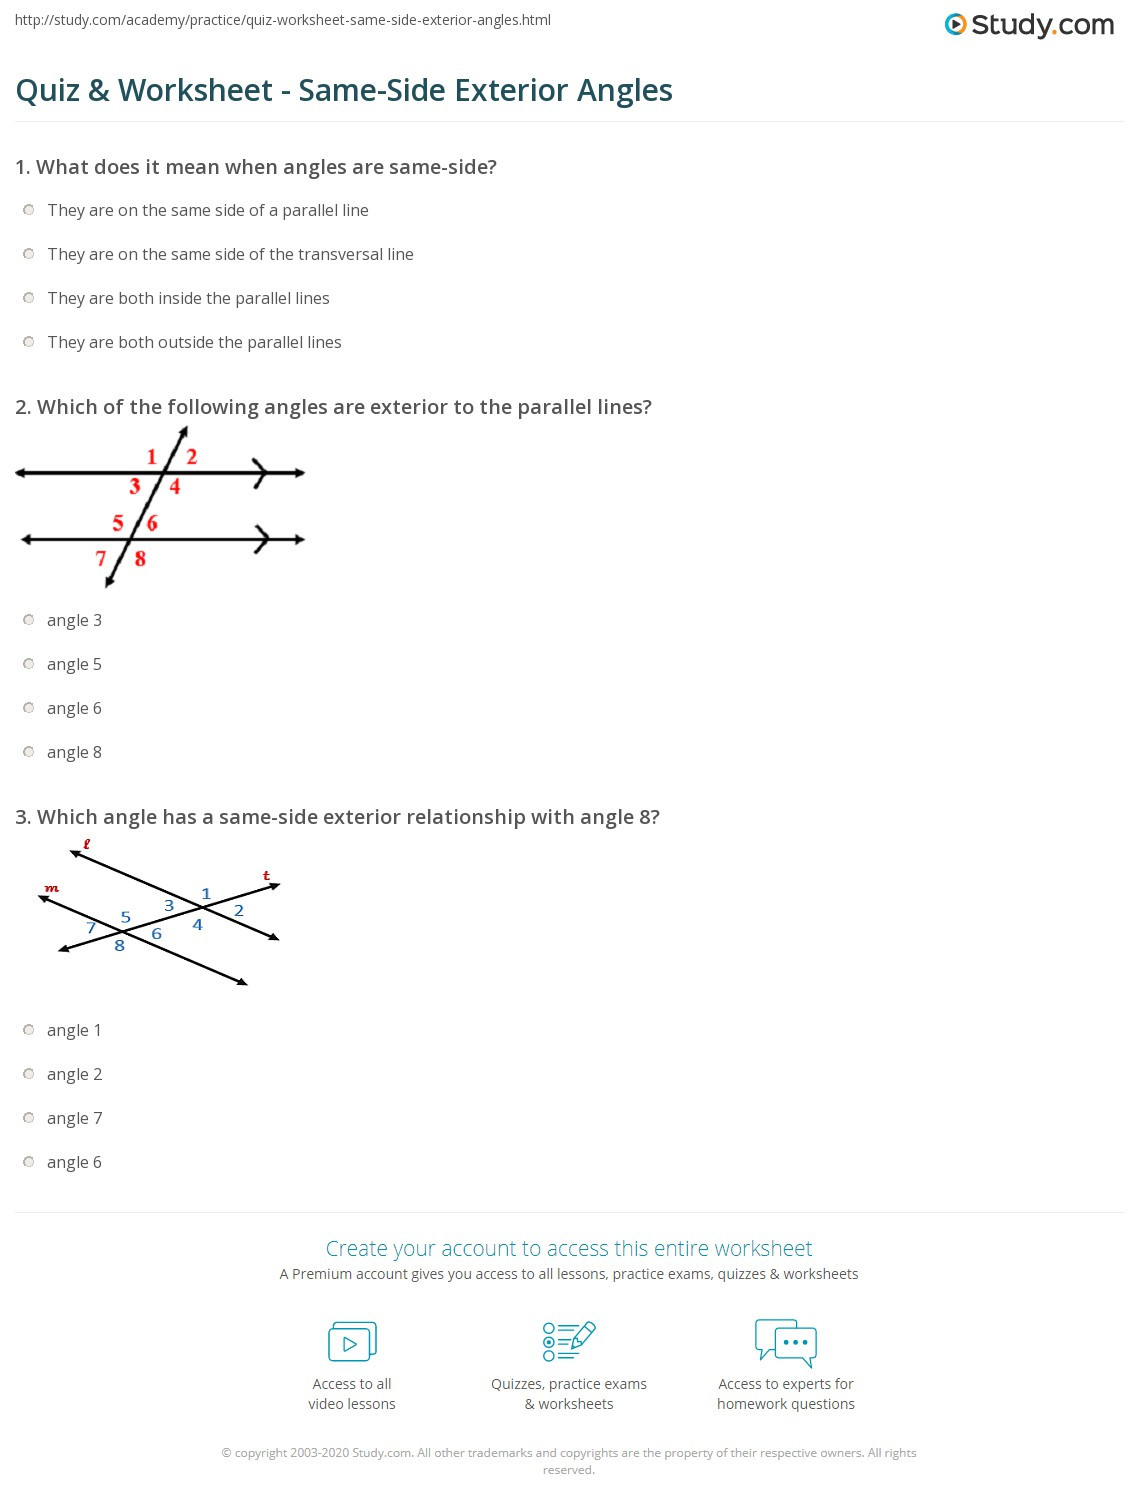 Exterior Angle theorem Worksheet Quiz &amp; Worksheet Same Side Exterior Angles